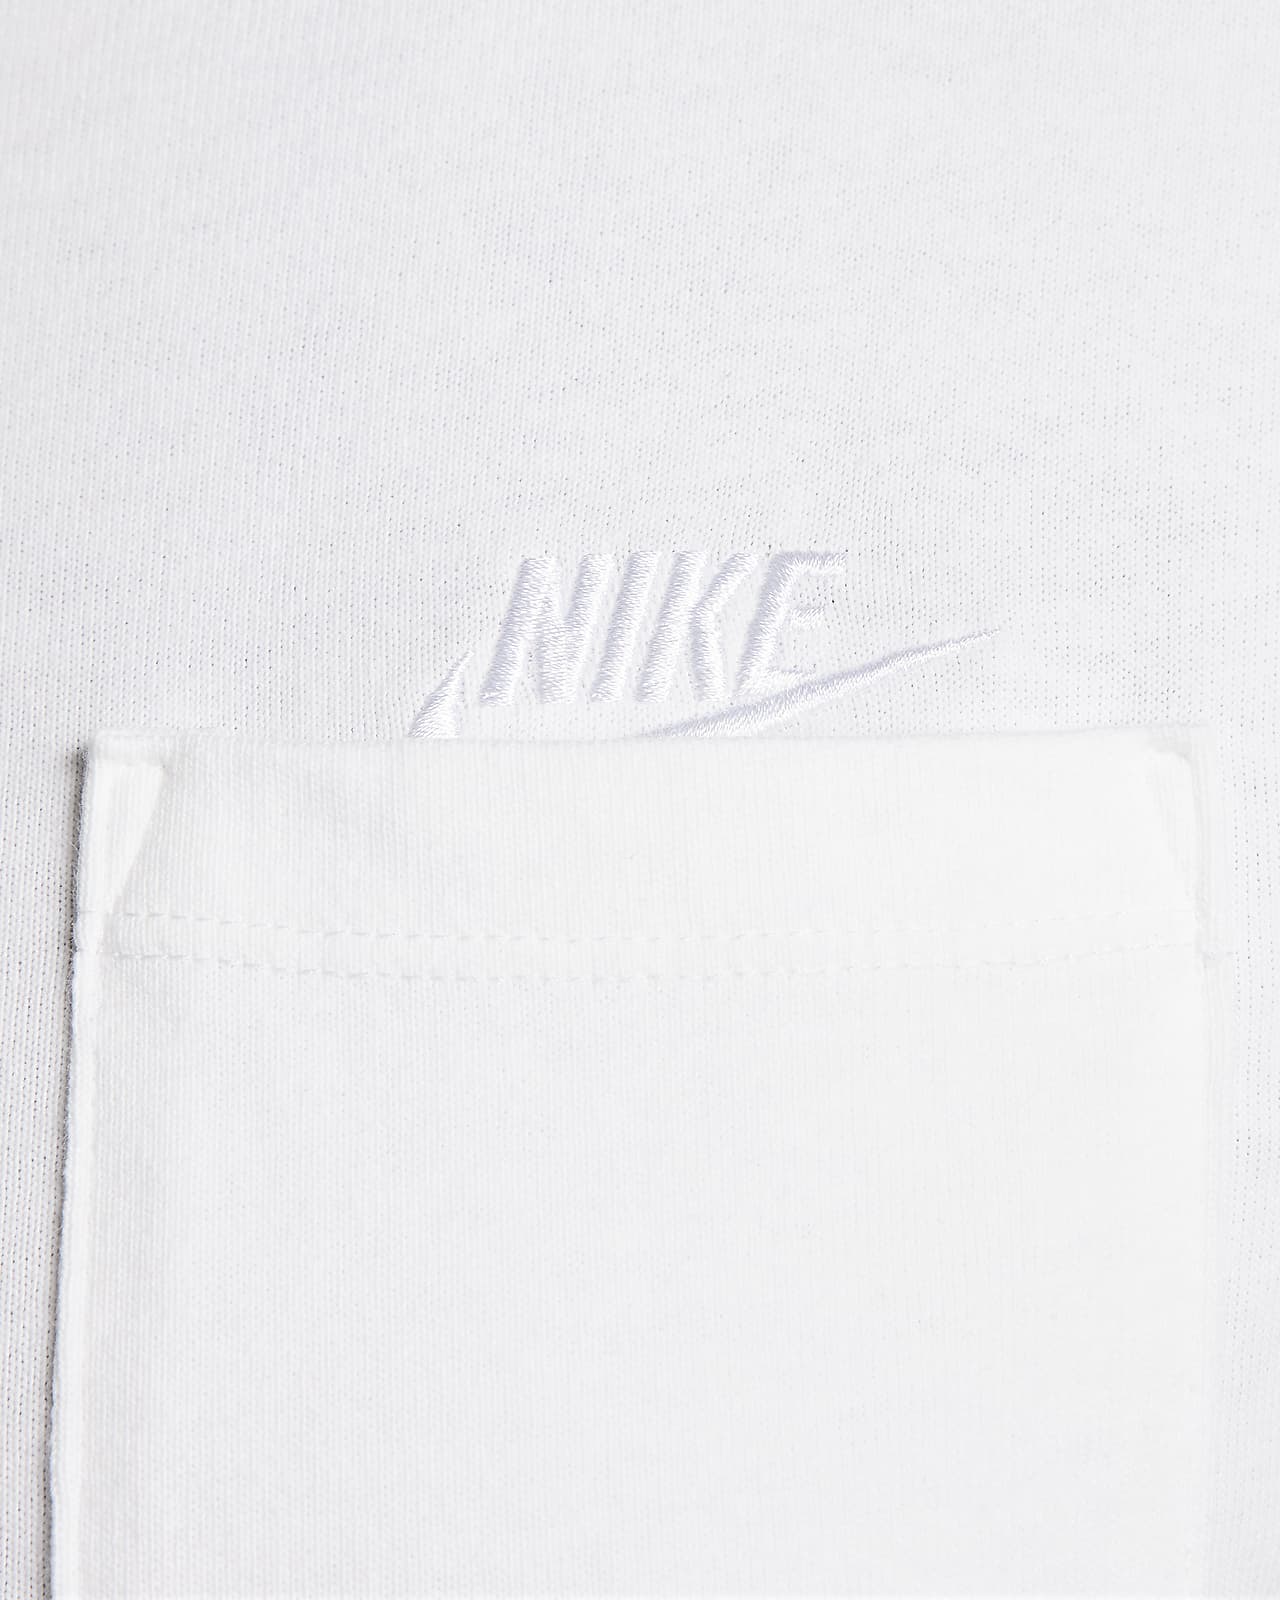 Camiseta negra unisex extragrande de Nike Premium Essentials